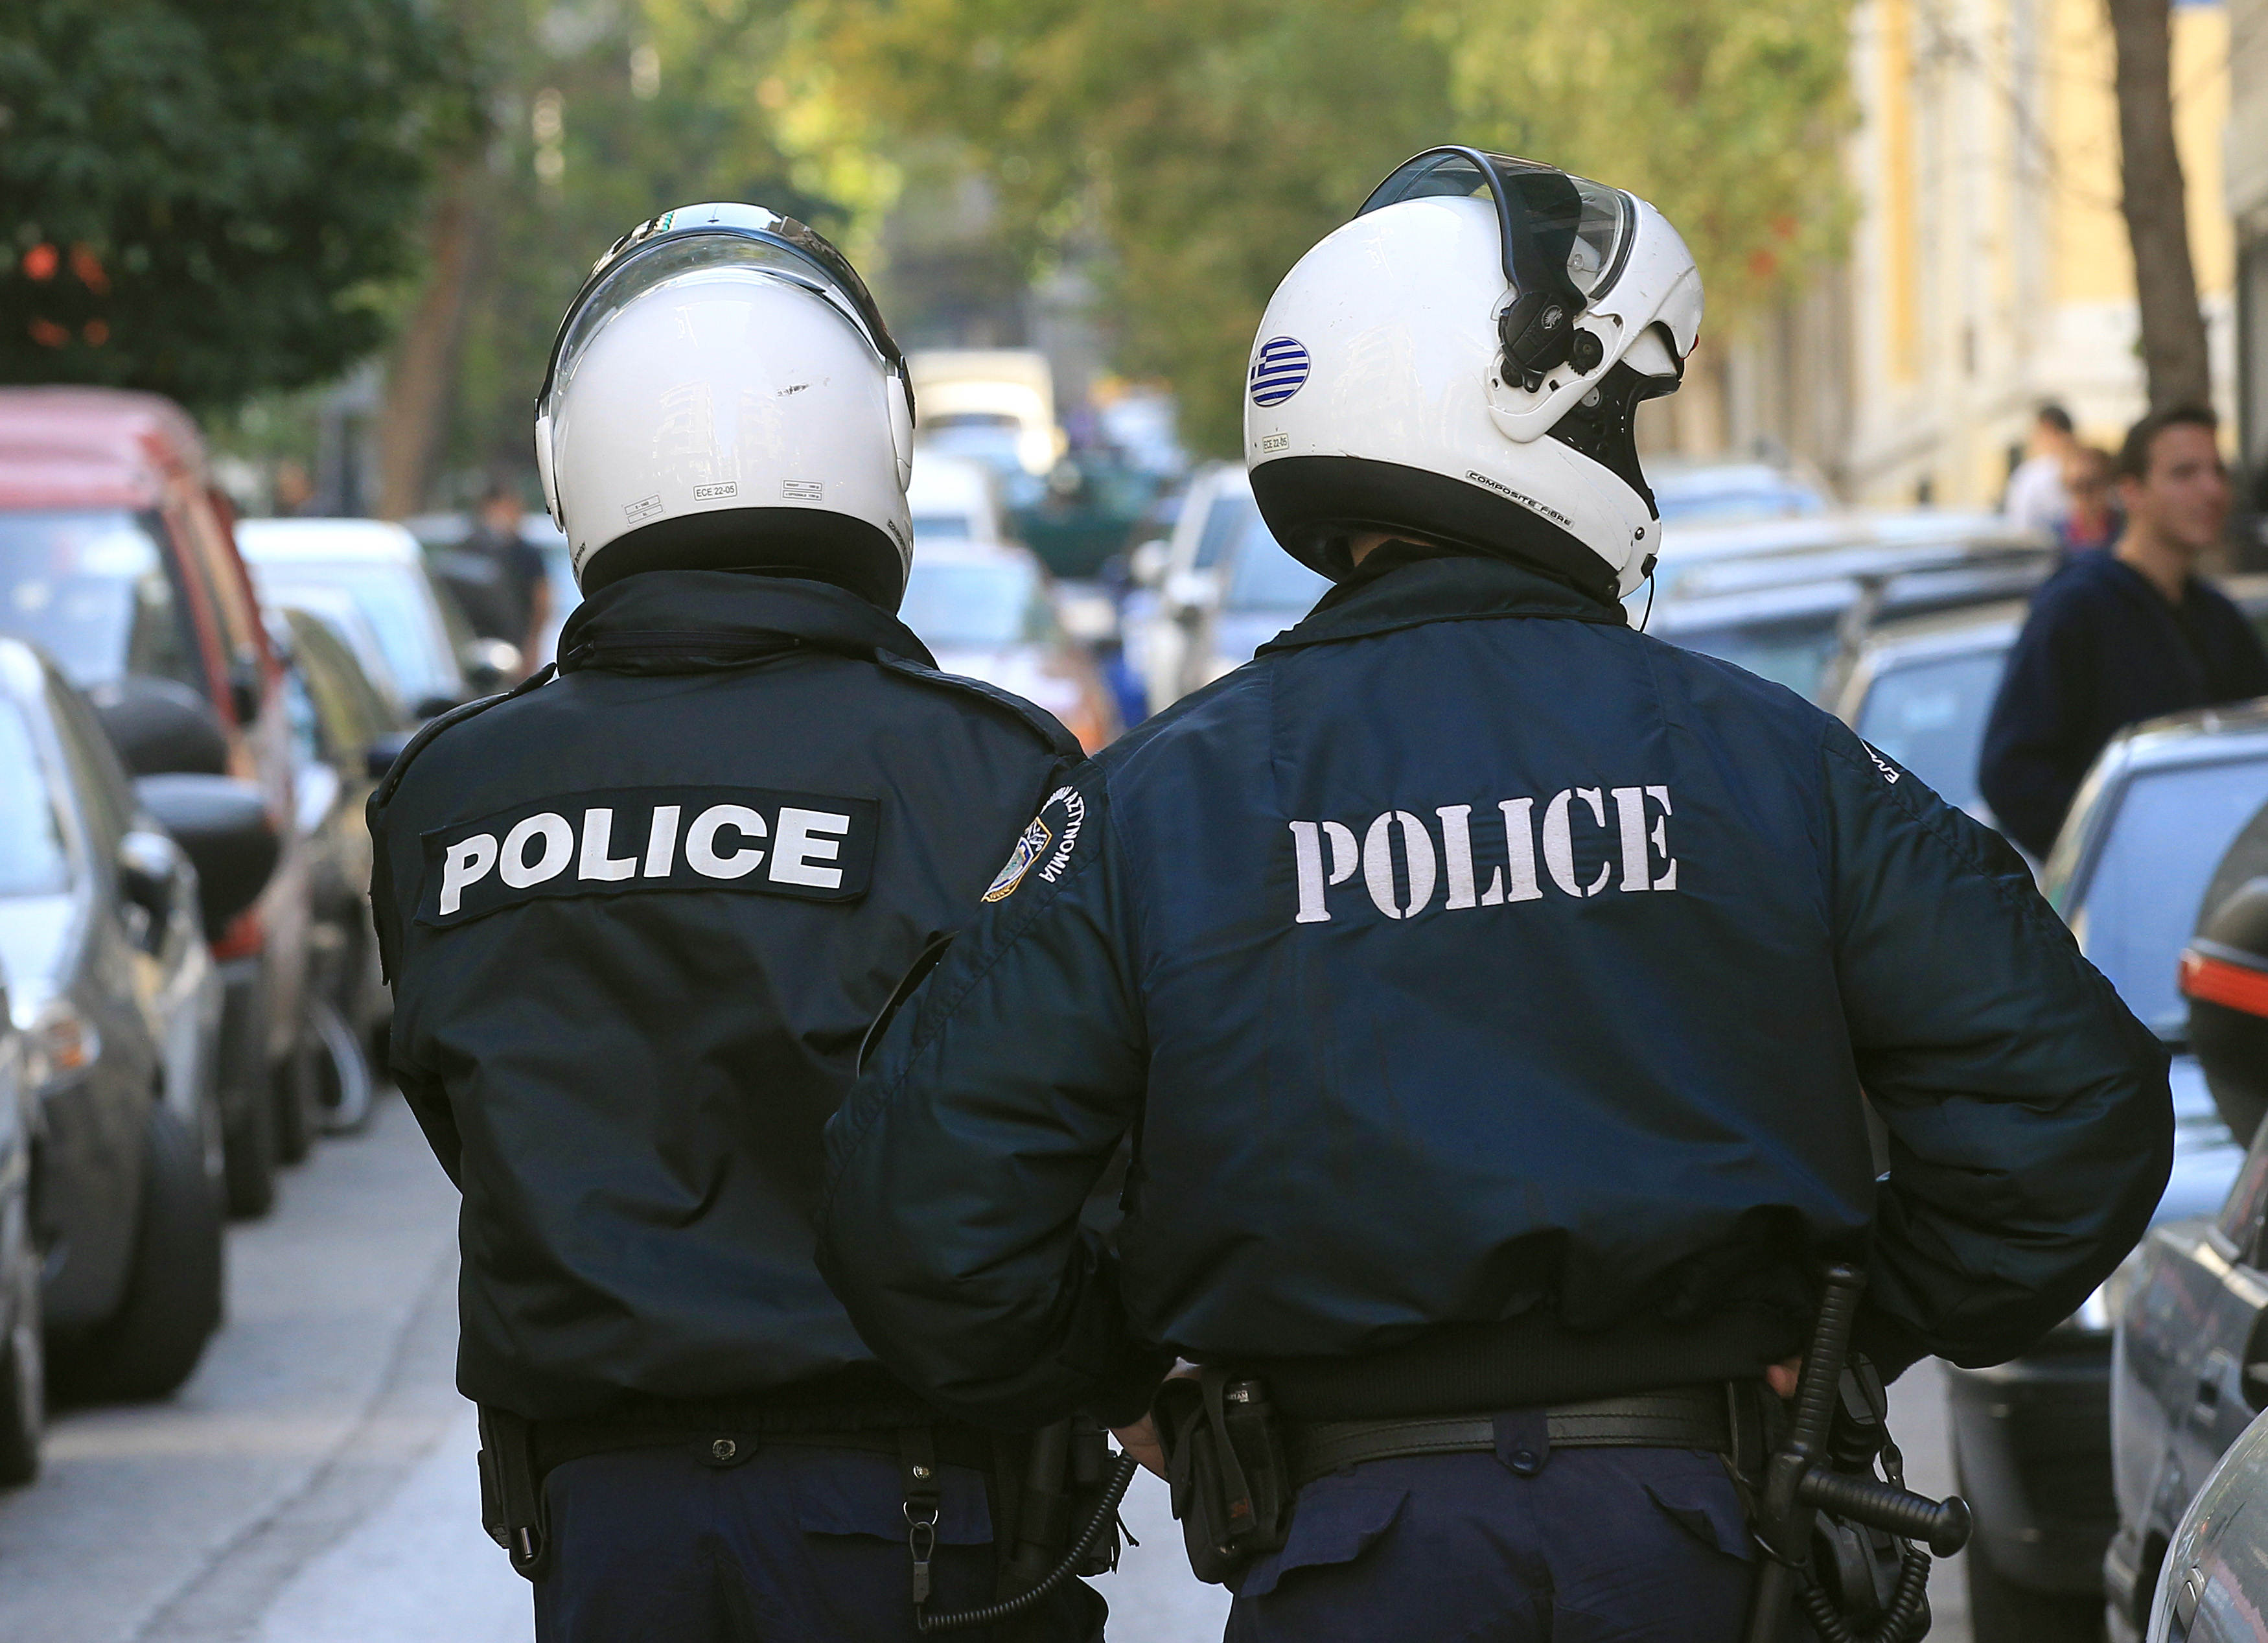 Πανελλήνια Ομοσπονδία Αστυνομικών: Δεν θα ξεσπιτώσουμε εμείς τους Έλληνες